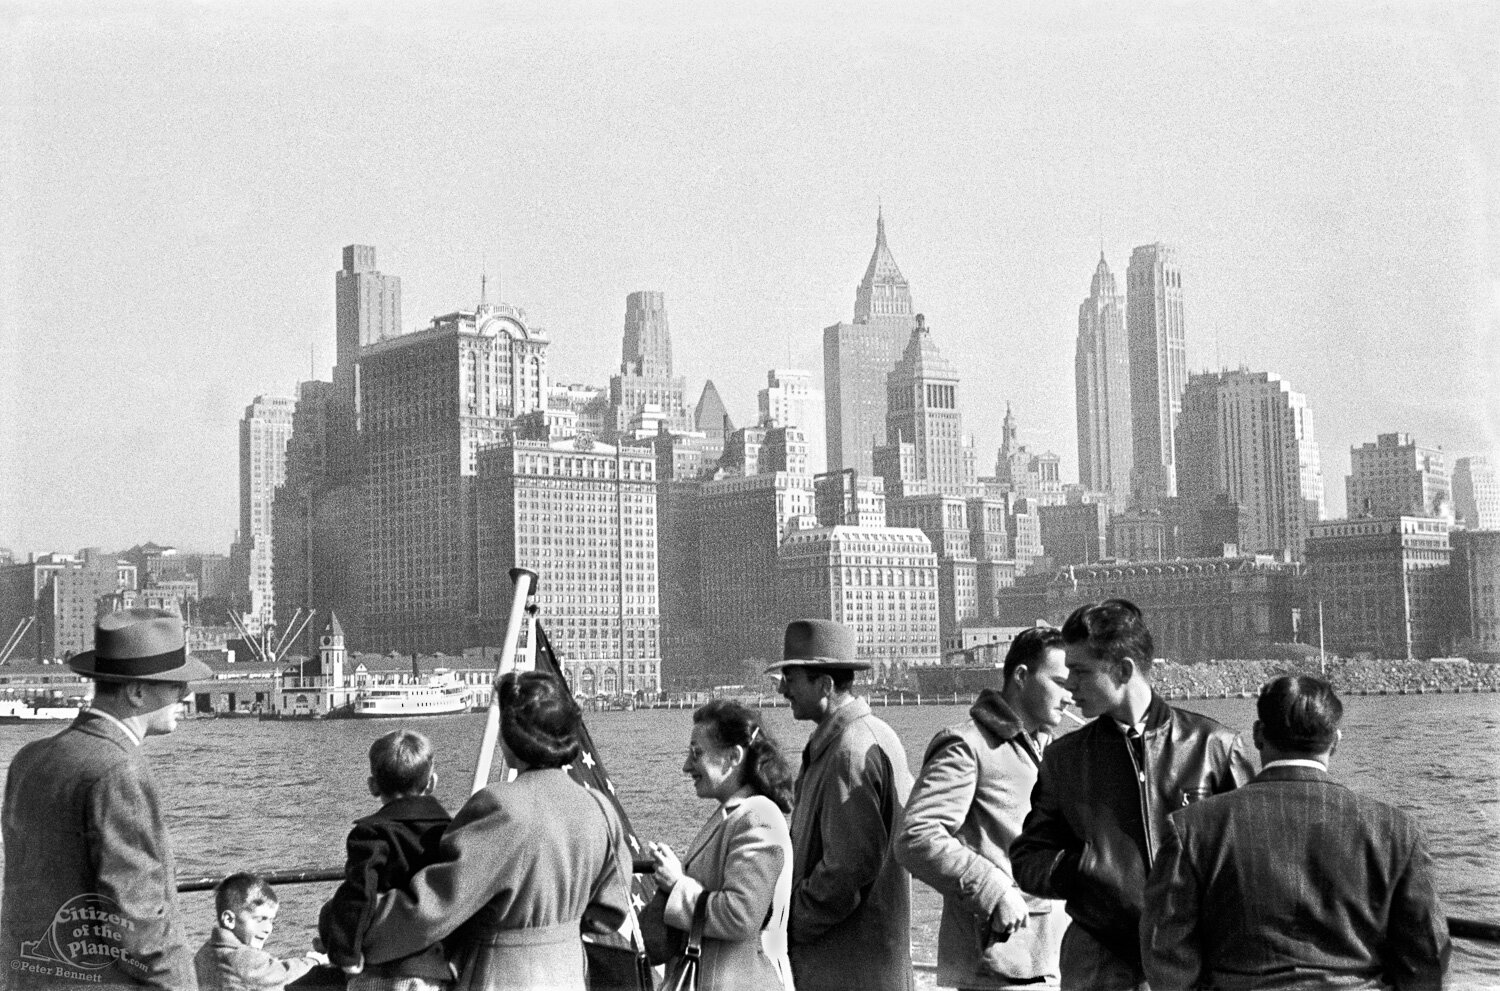 Lower Manhattan from Staten Island Ferry, 1948